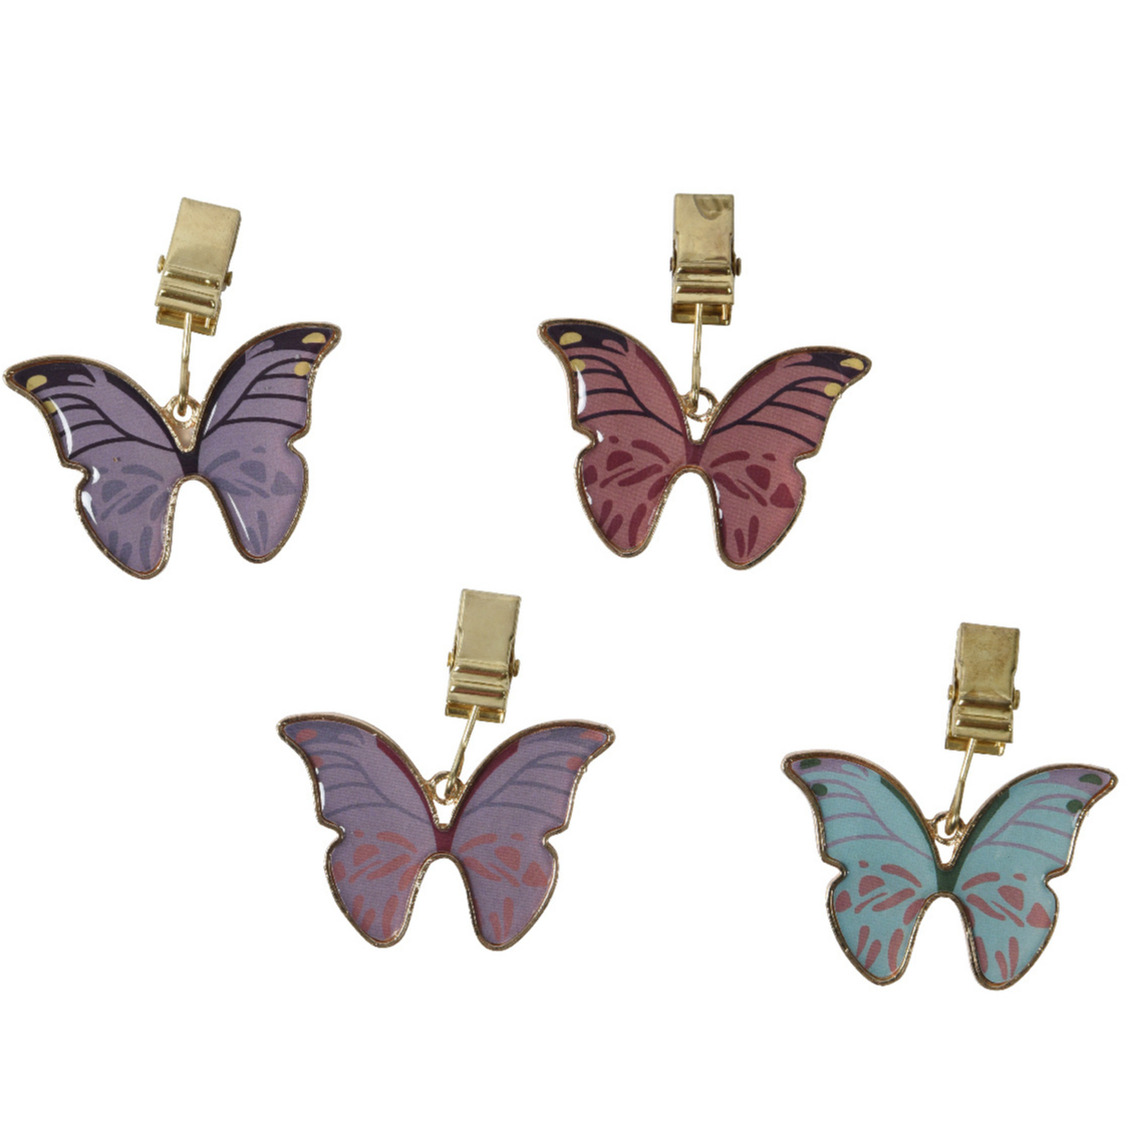 Tafelkleedgewichtjes-hangers 4x vlinder metaal paars